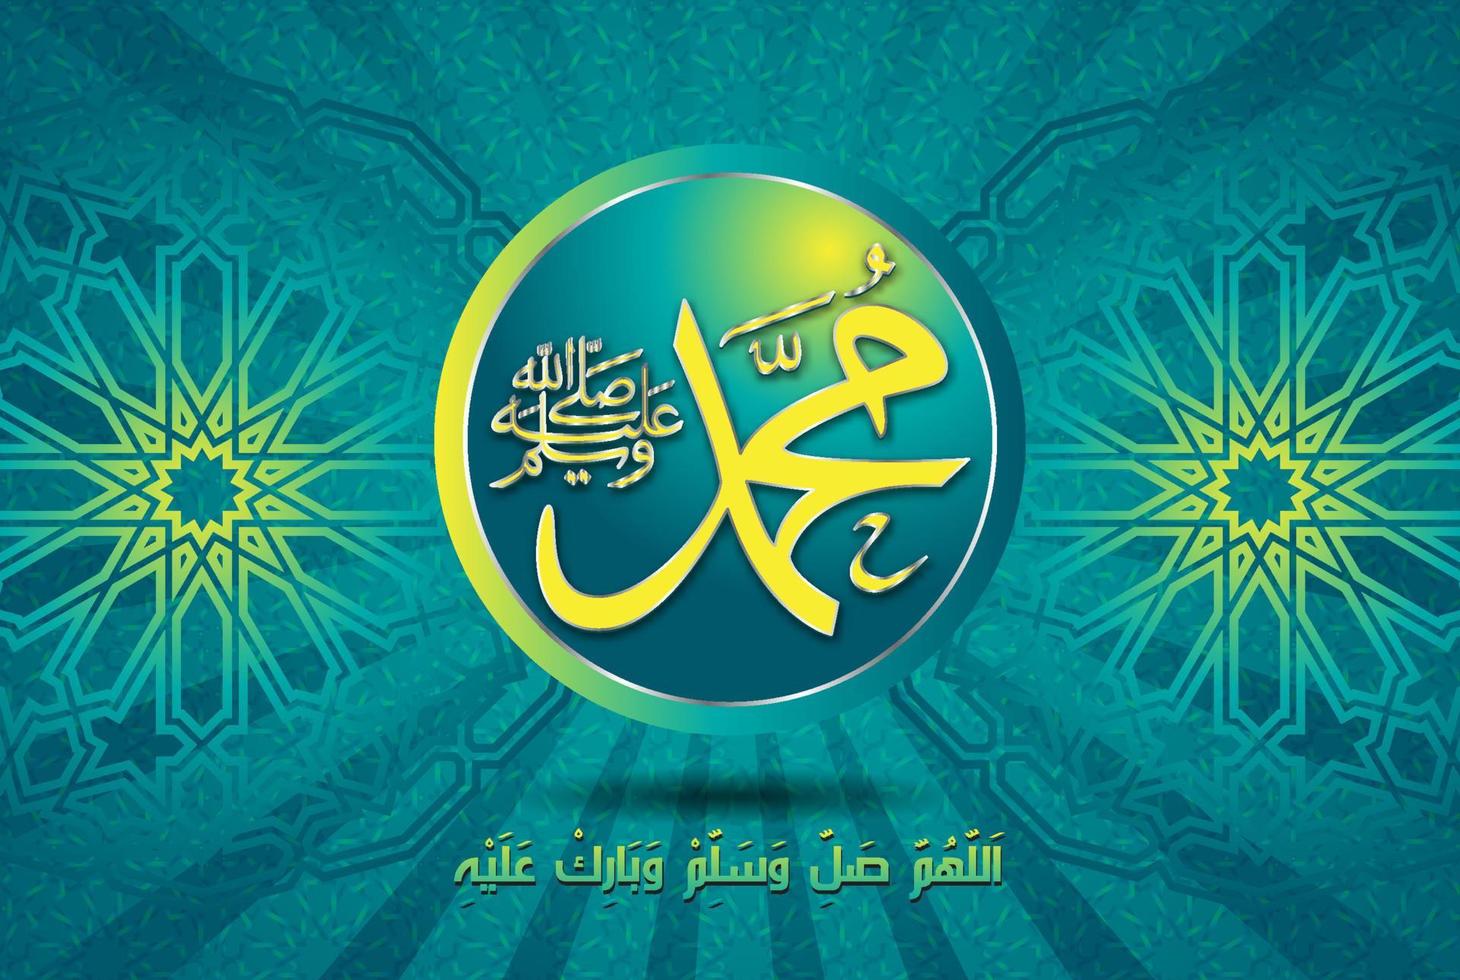 al-mawlid al-nabawi al-sharif. tradujo el honorable nacimiento del profeta mohammad. caligrafía árabe vector